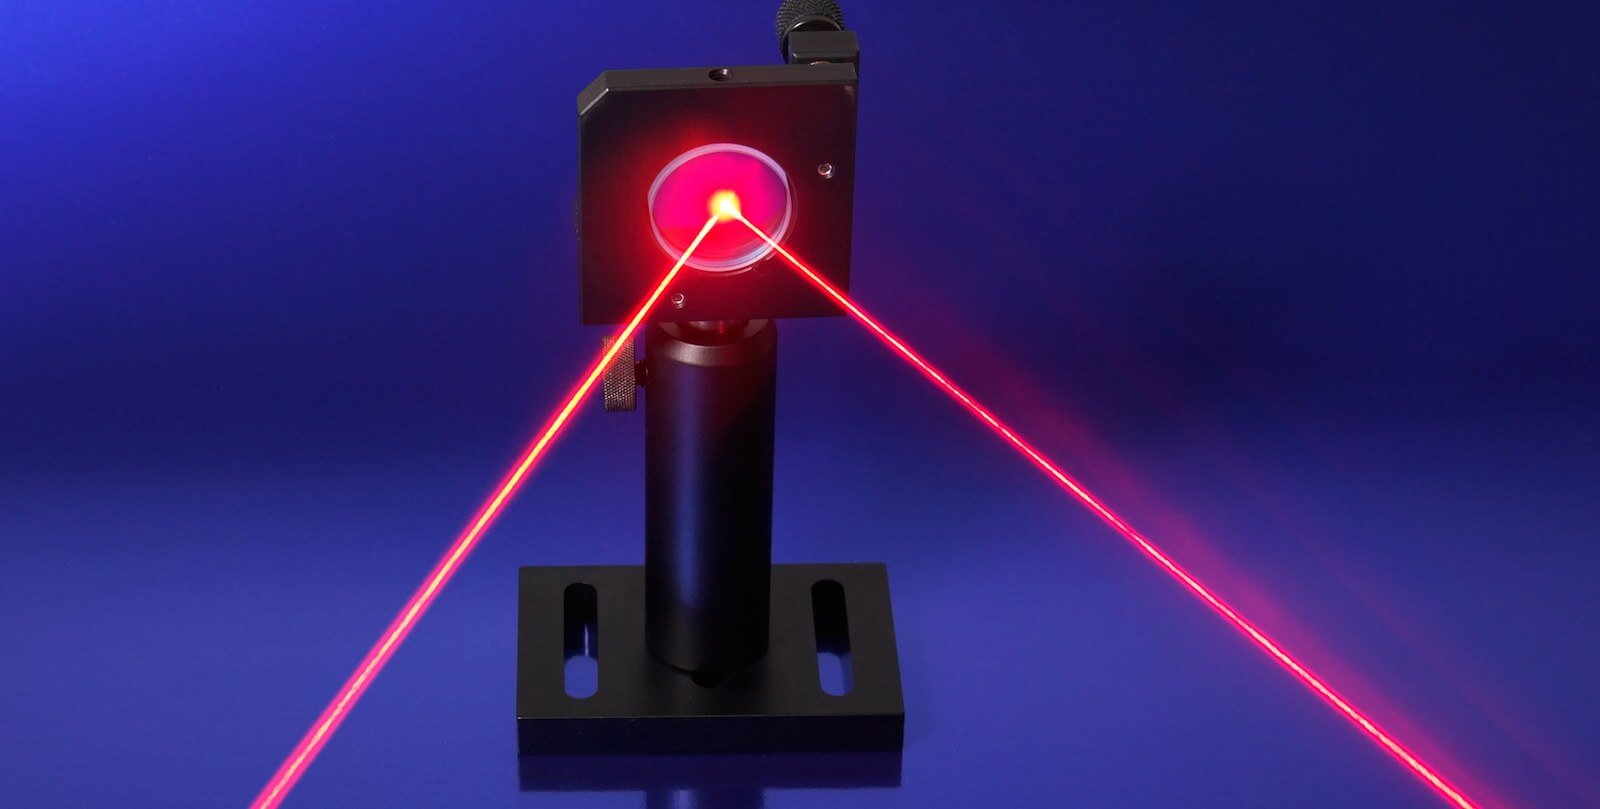 Le pentagone développe le «parler» des lasers. Qu'est-ce et pourquoi?